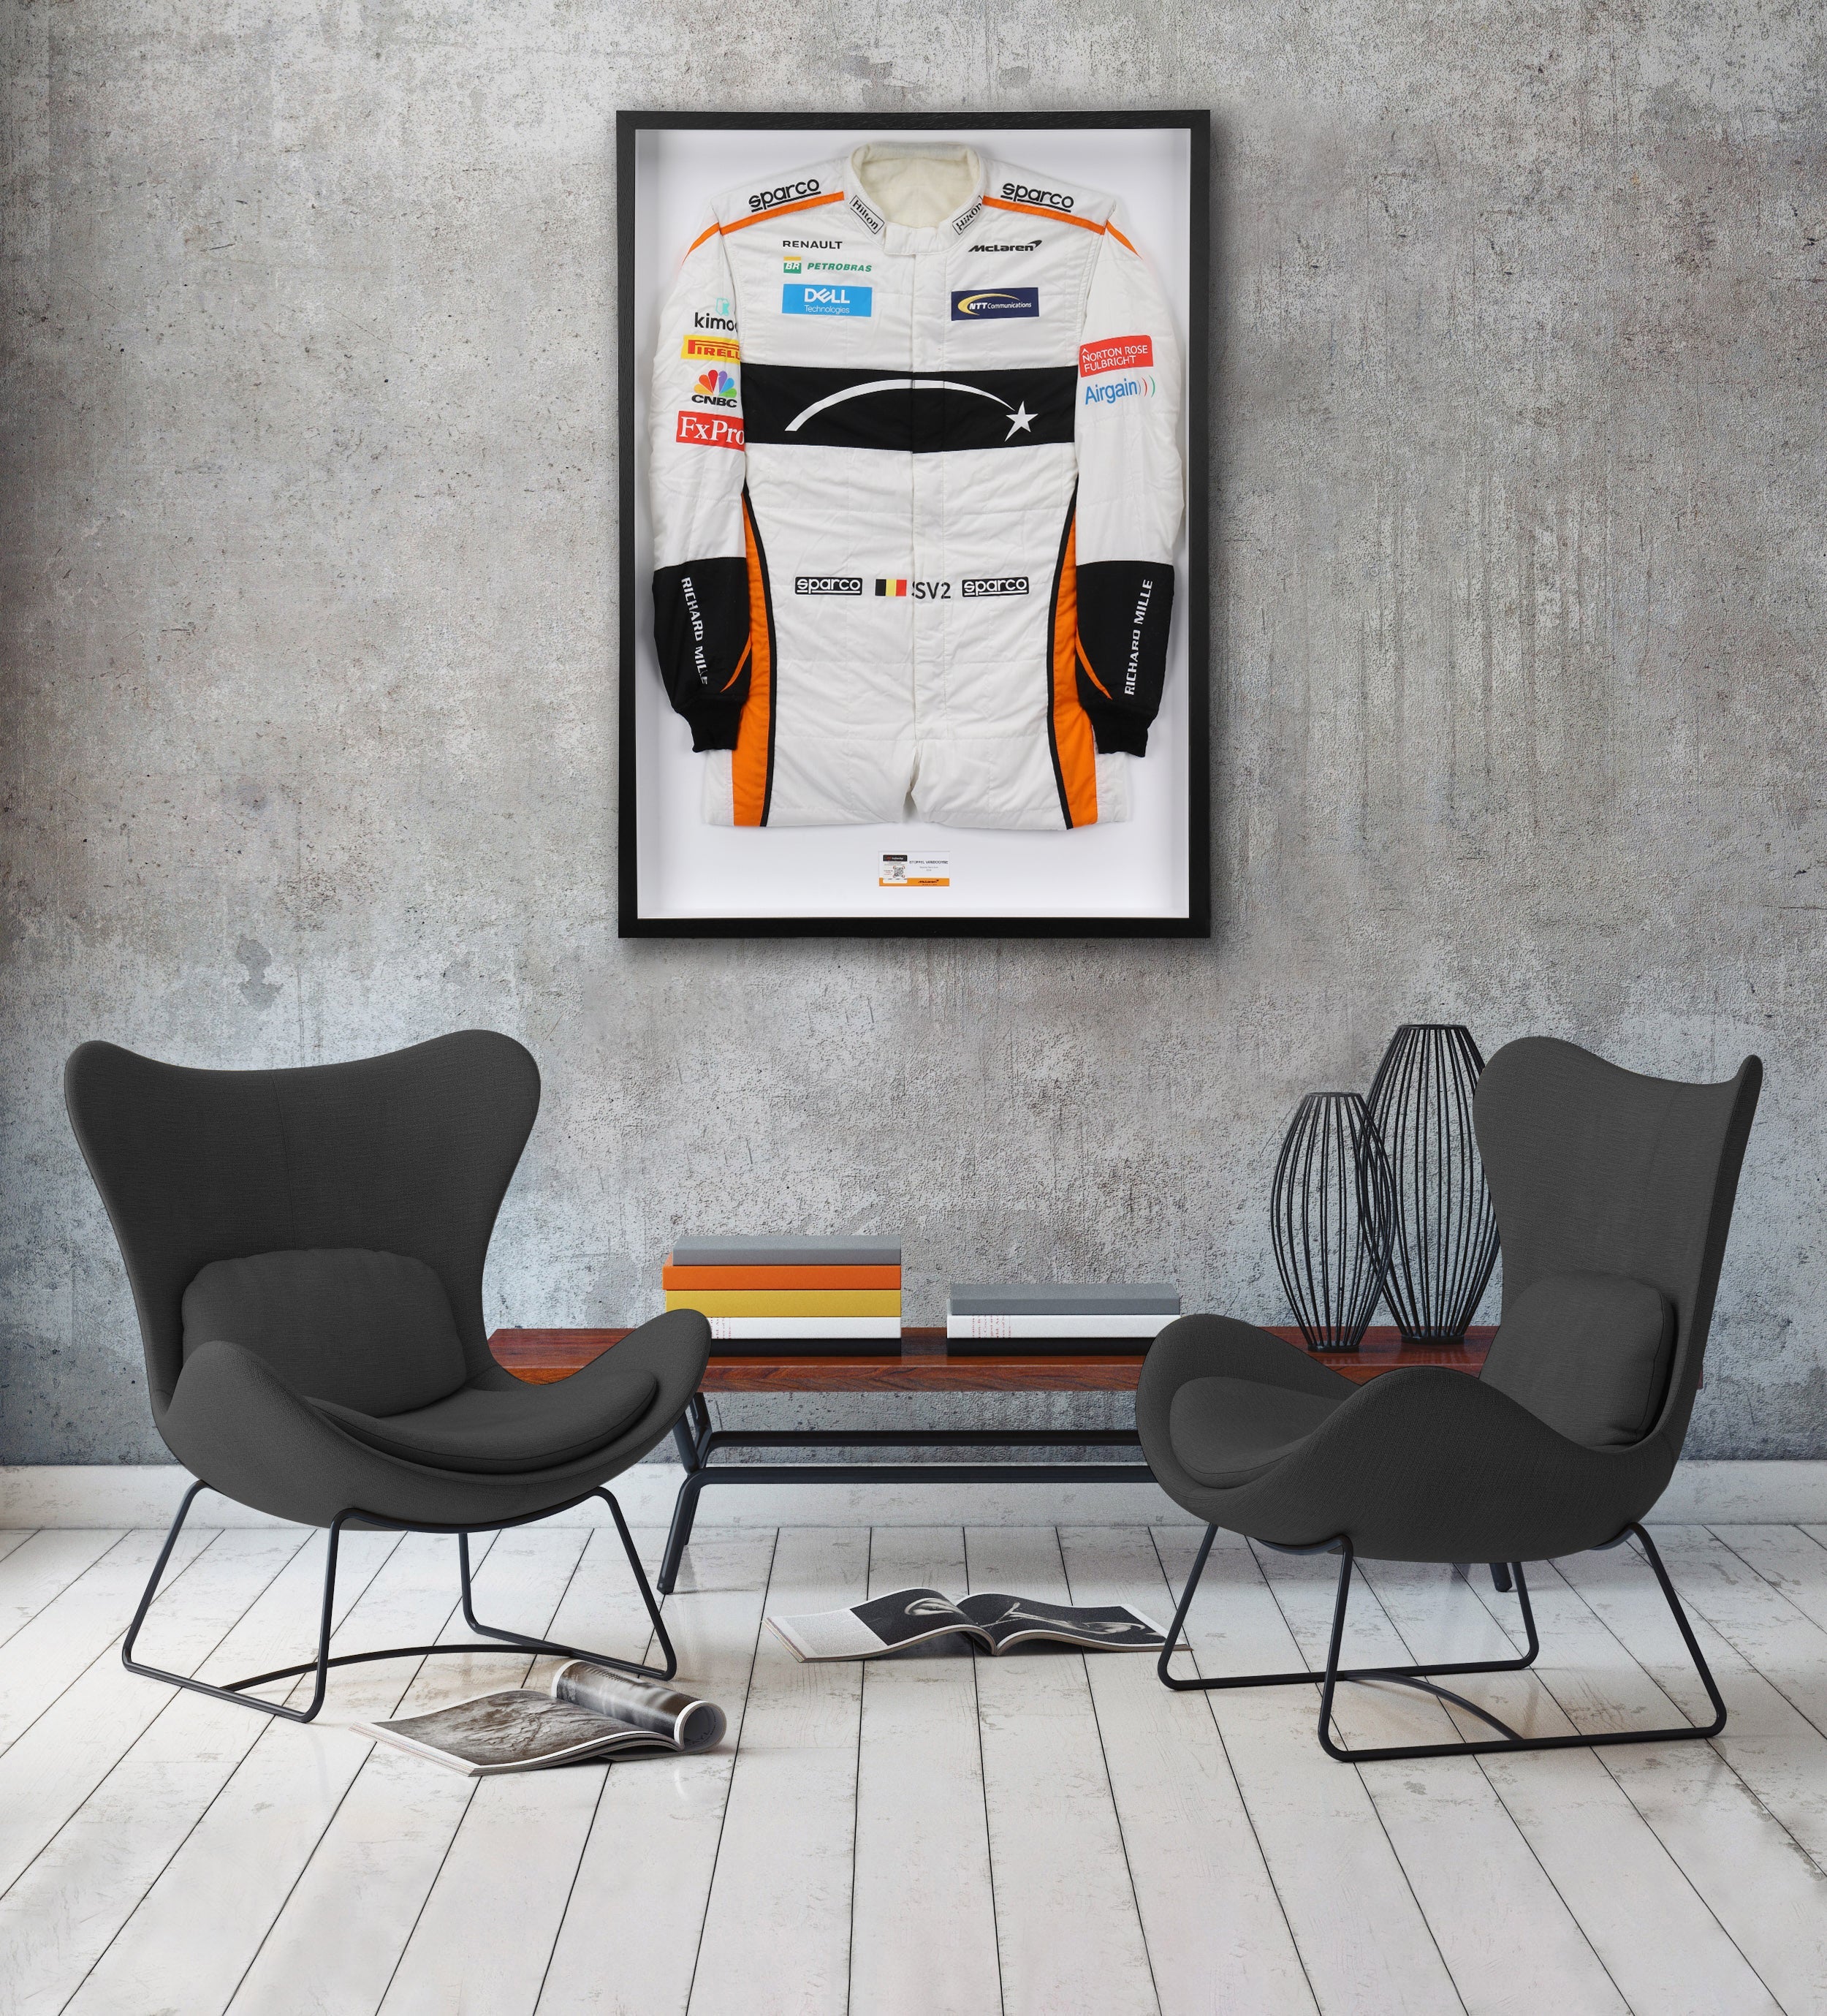 Stoffel Vandoorne 2018 Replica McLaren F1 Team Race Suit